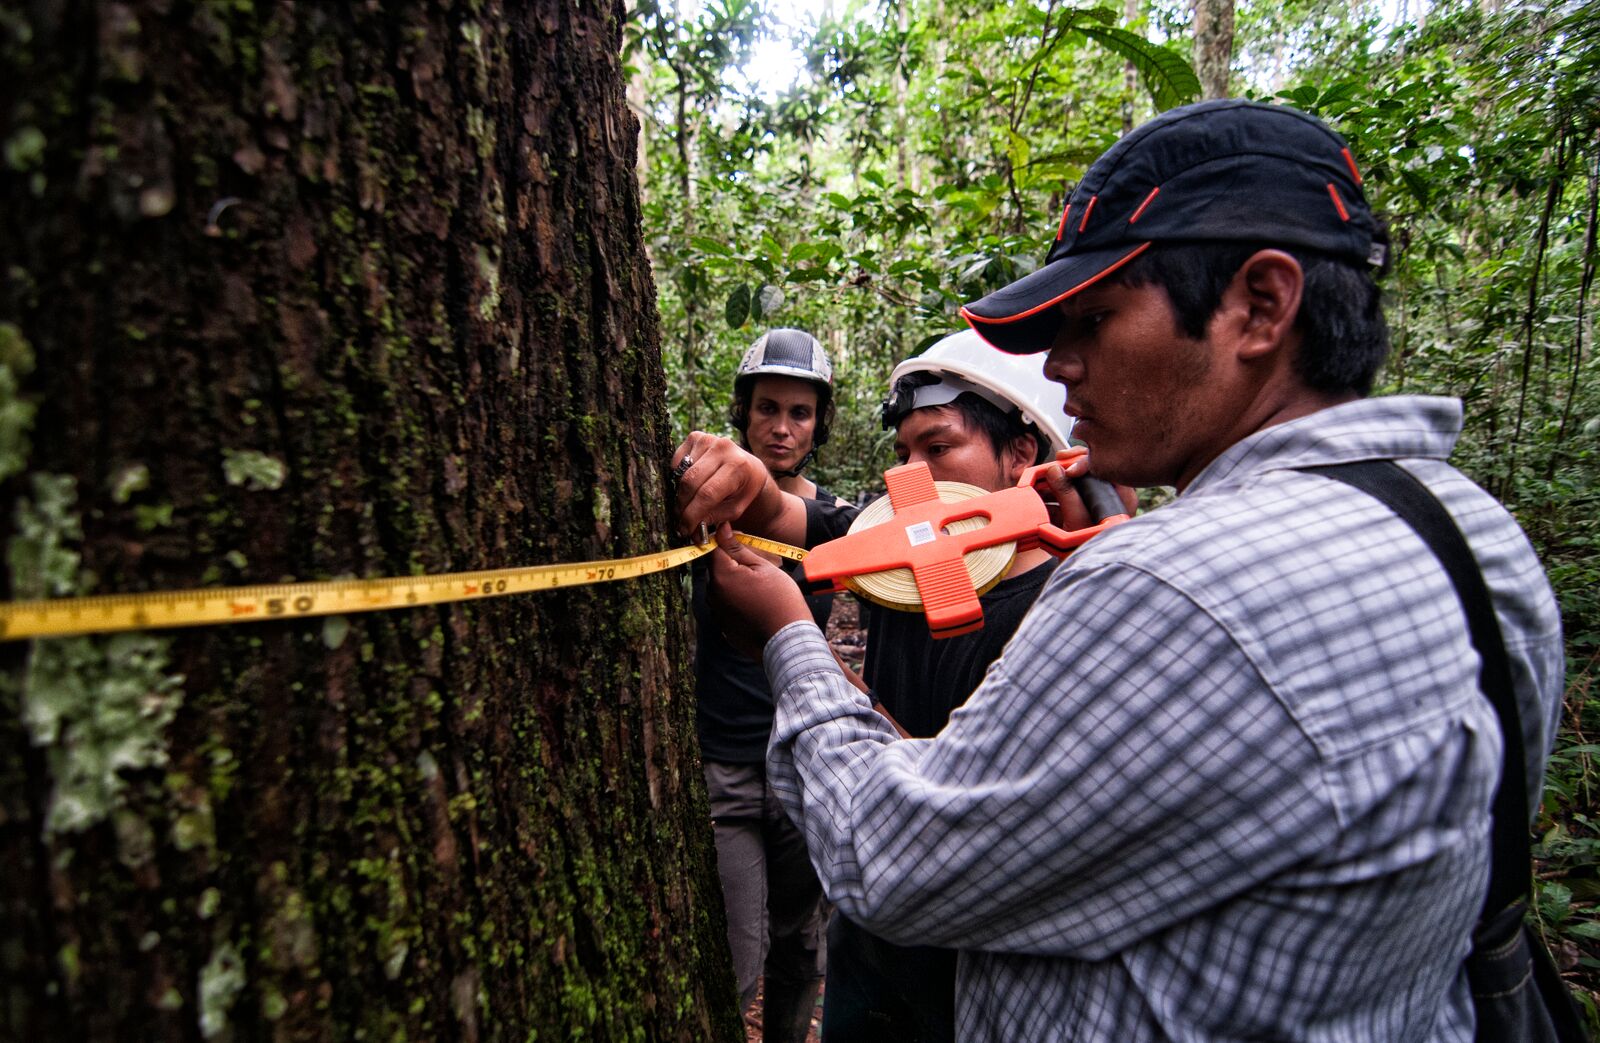 Measuring a tree in Peru